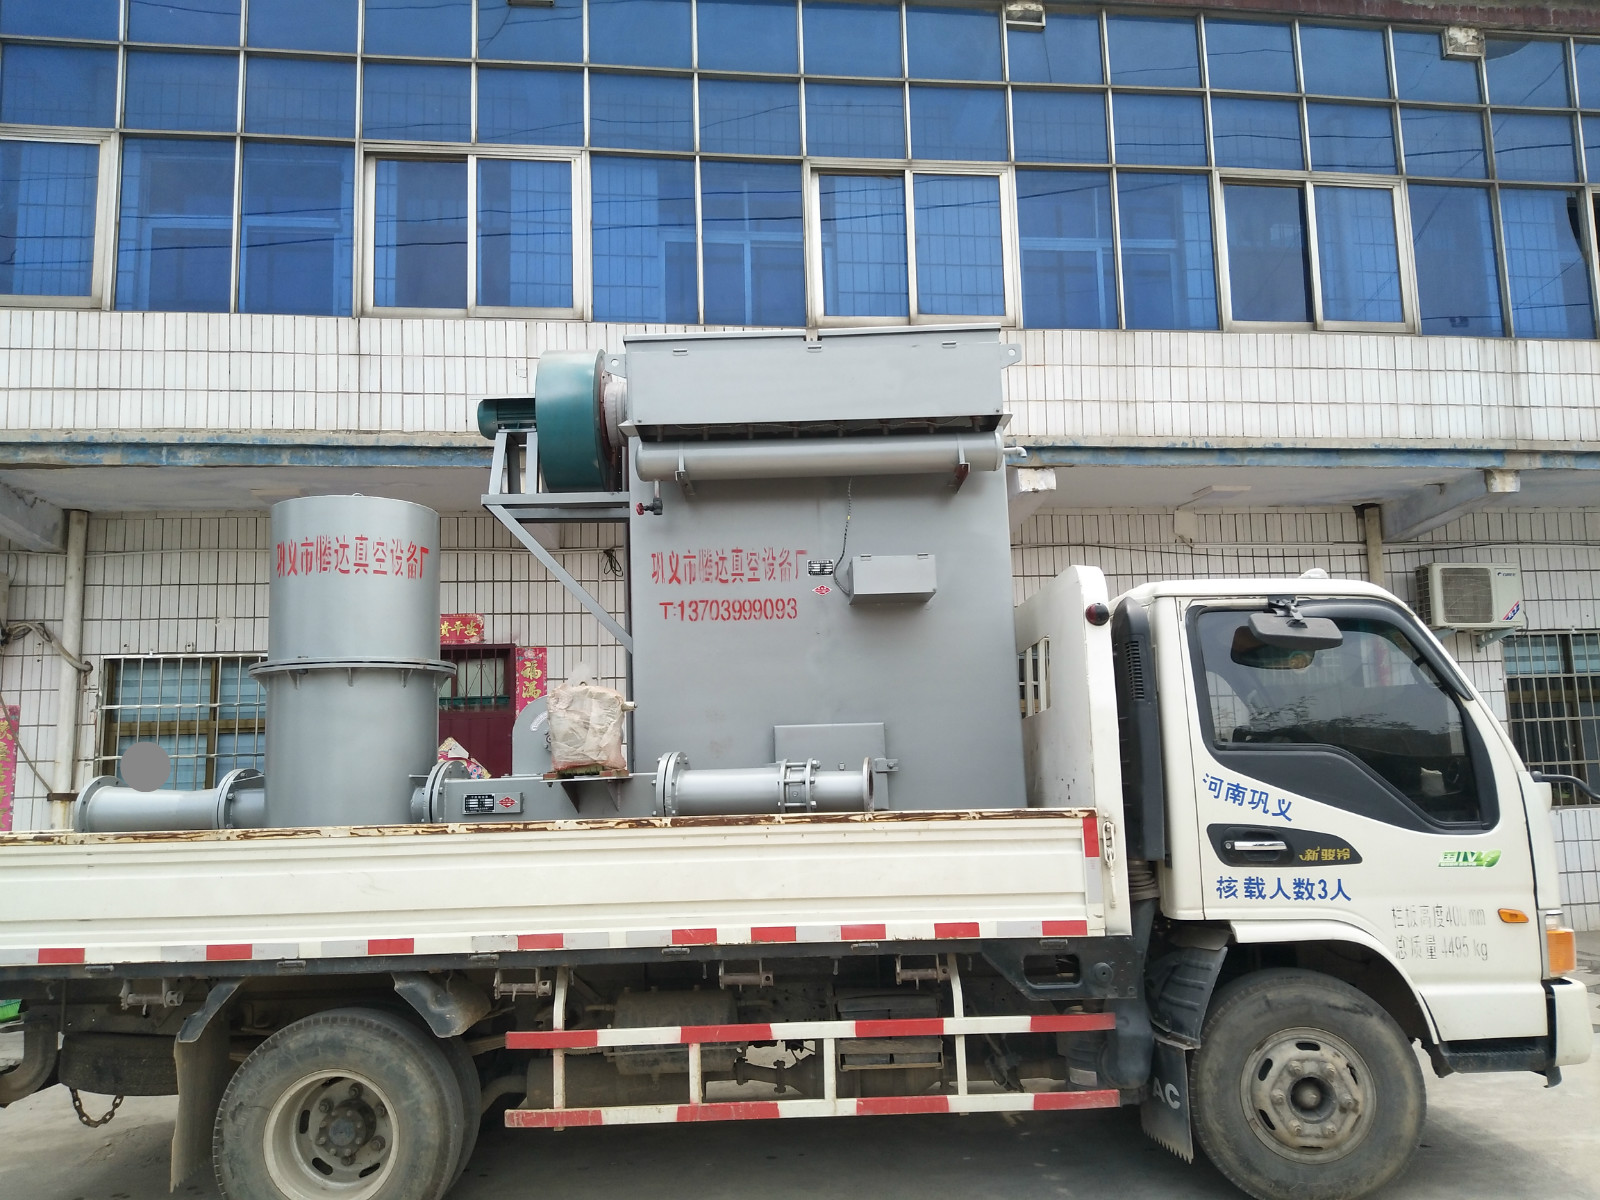 腾达粉煤灰输送泵设备采用低压气力输灰系统技术